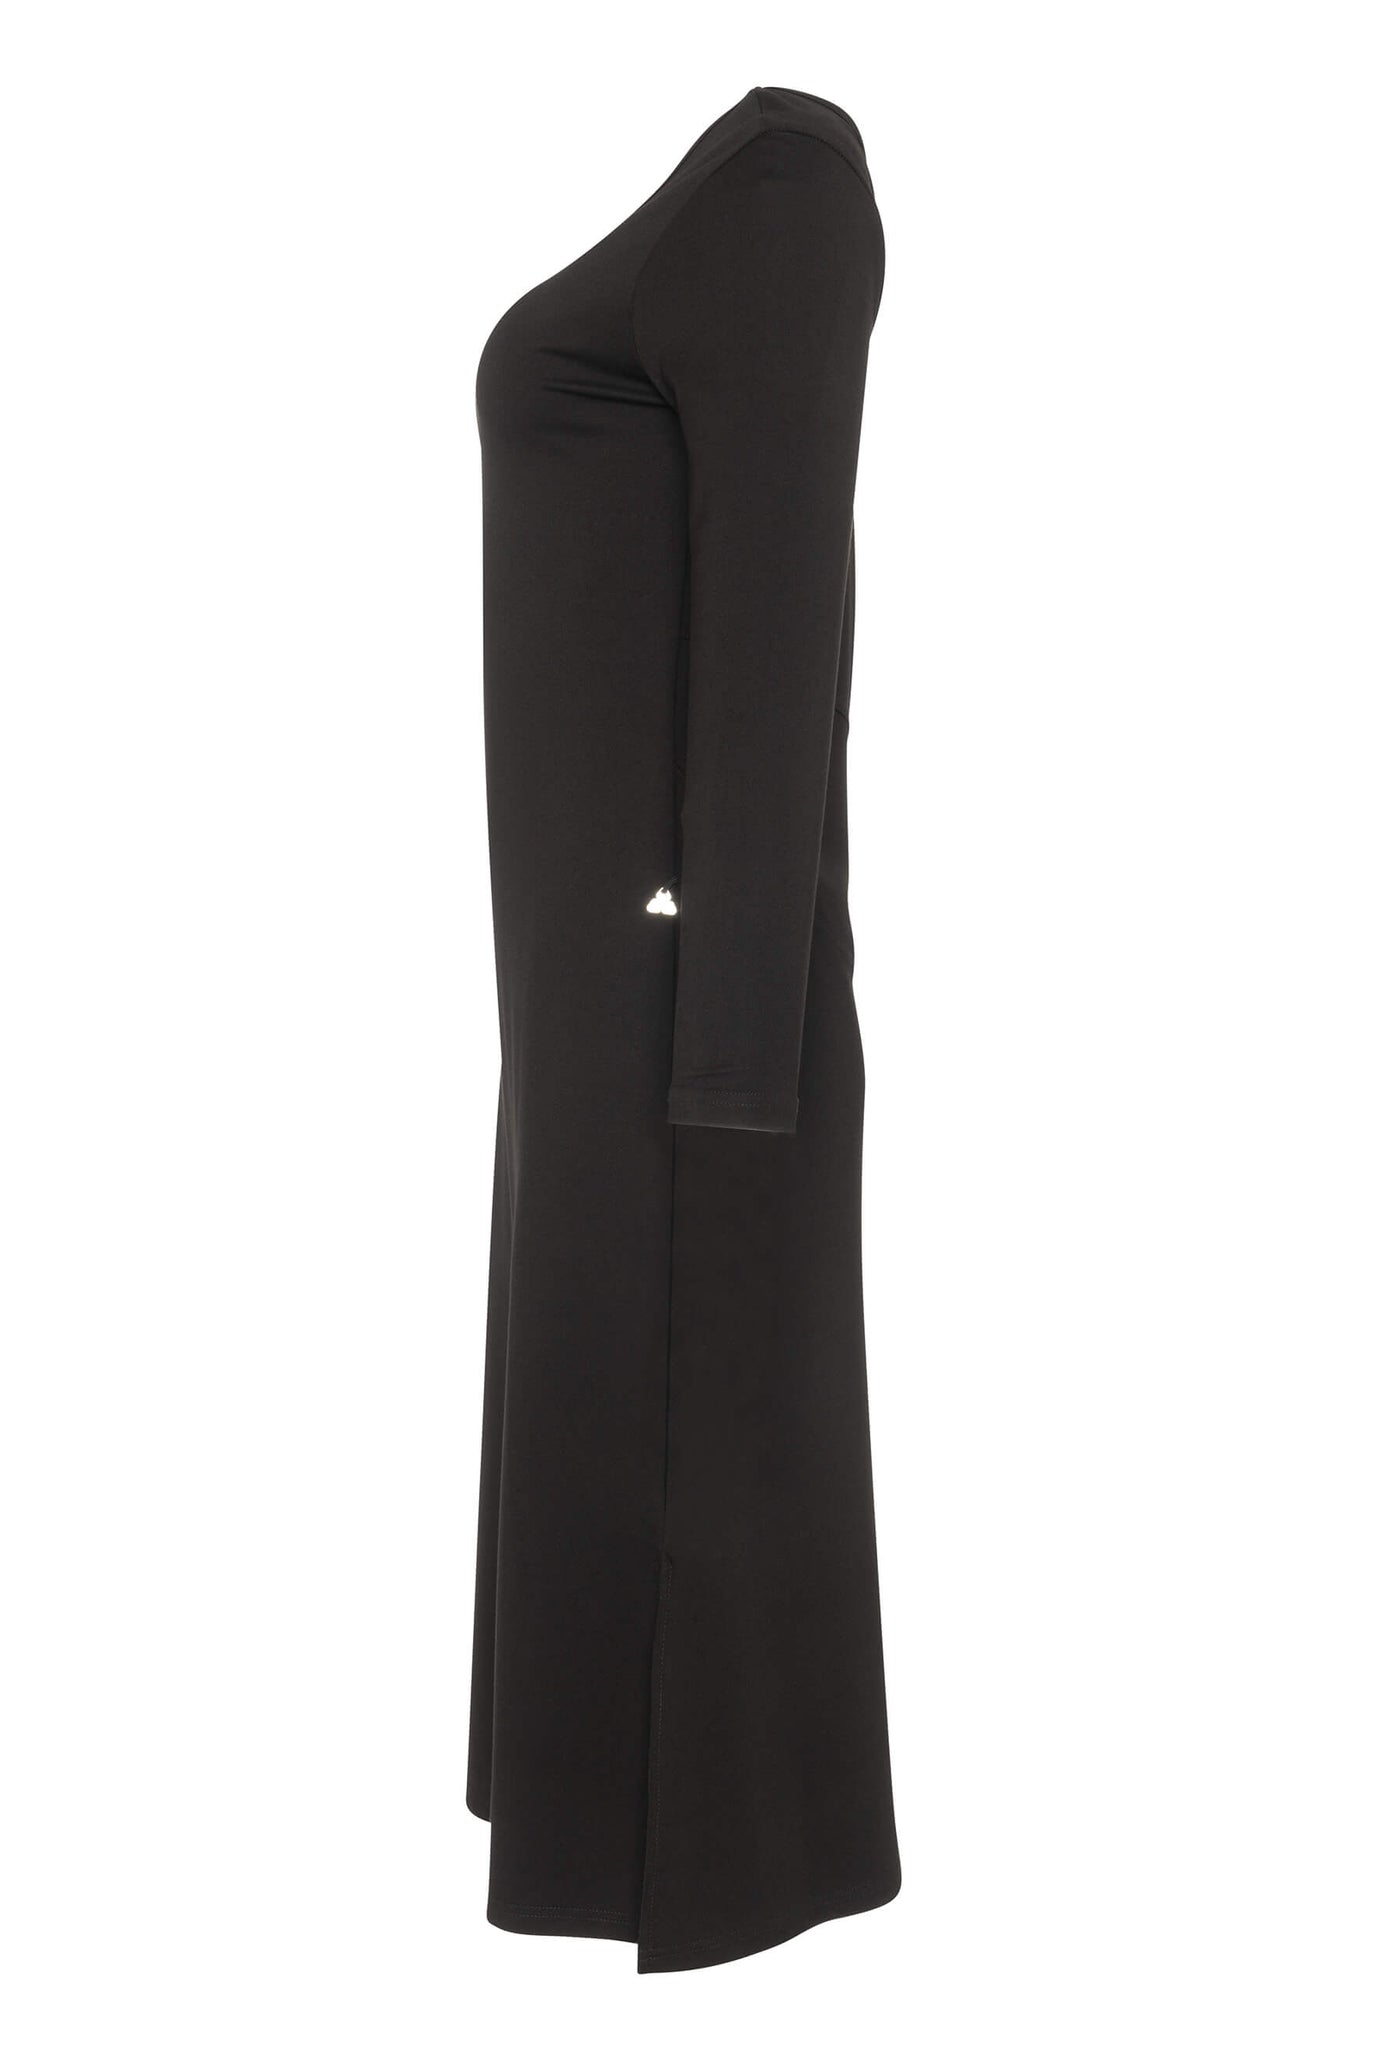 Découvrez la robe noire Amalia conçue par Katy St-Laurent. Cette robe noire de longueur midi est élégante et offre un look raffiné.